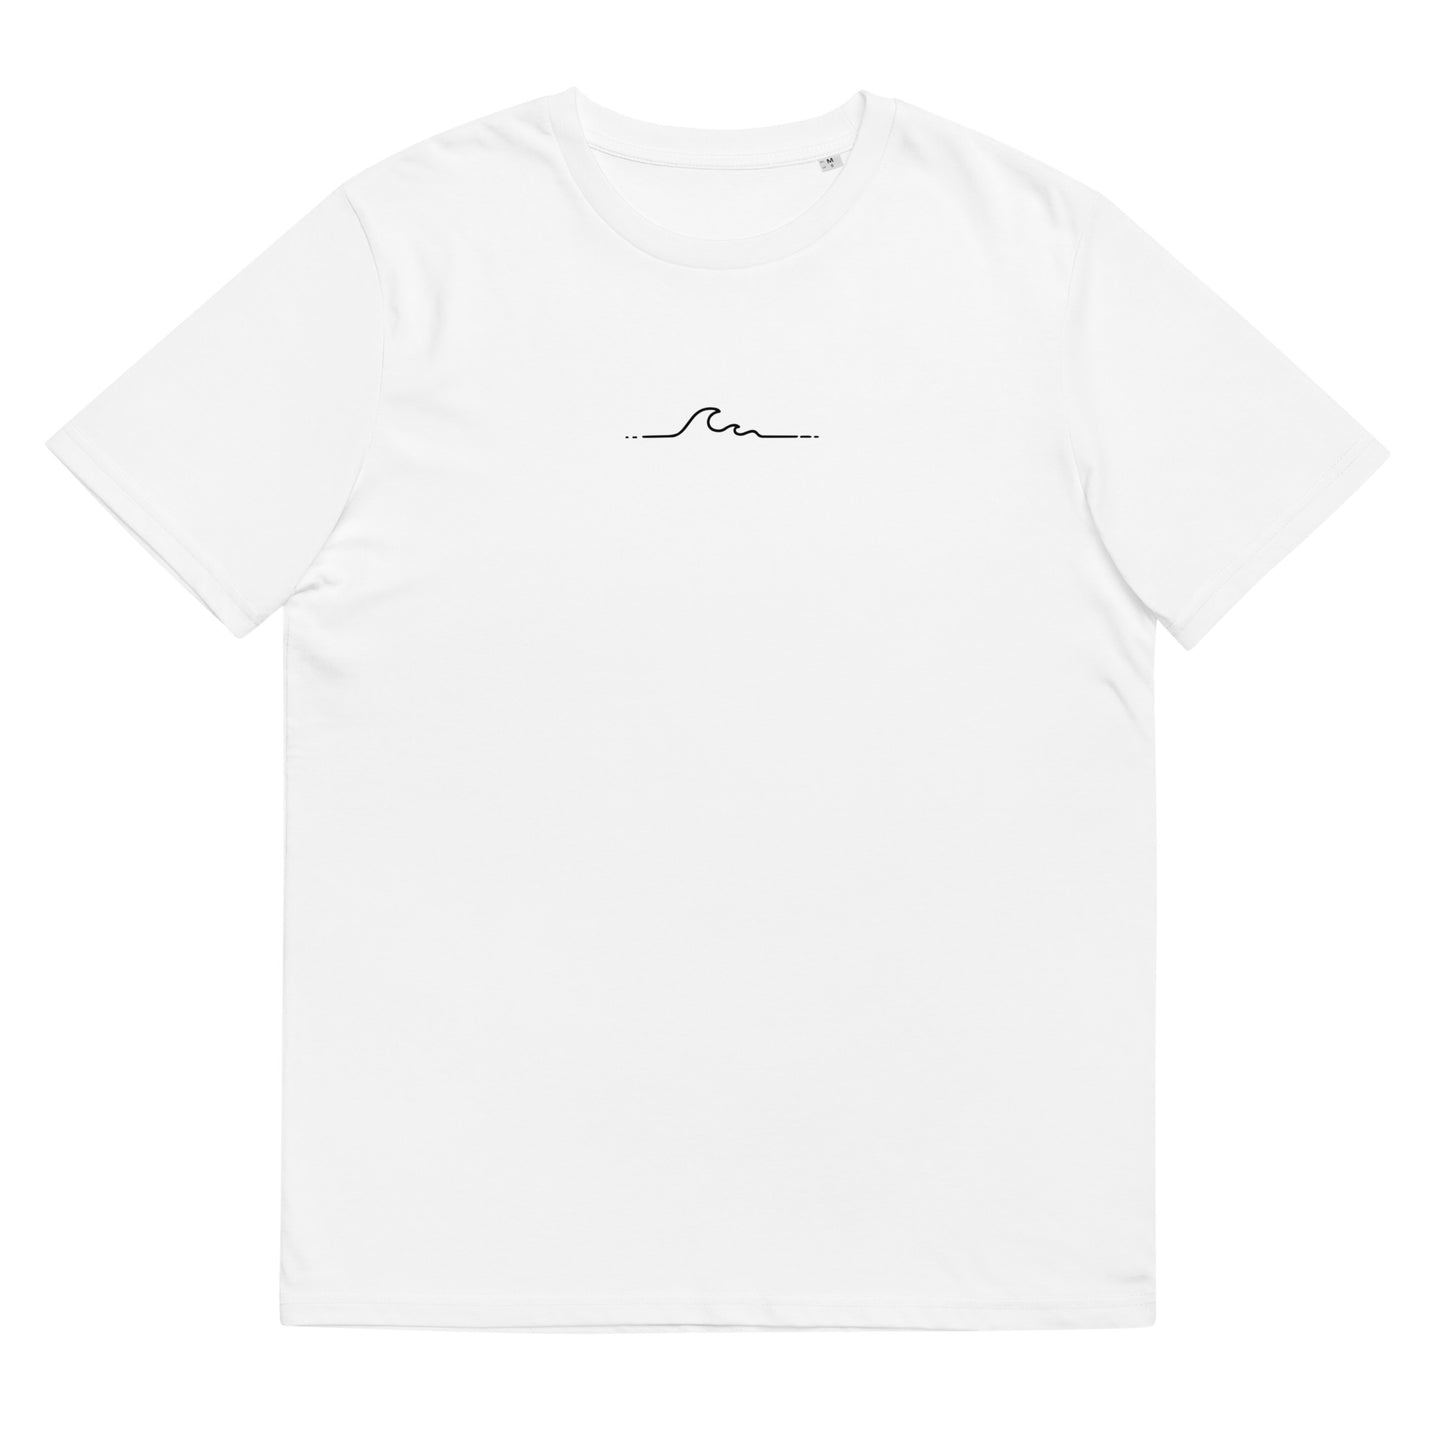 Cooles, nachhaltiges Unisex T-Shirt